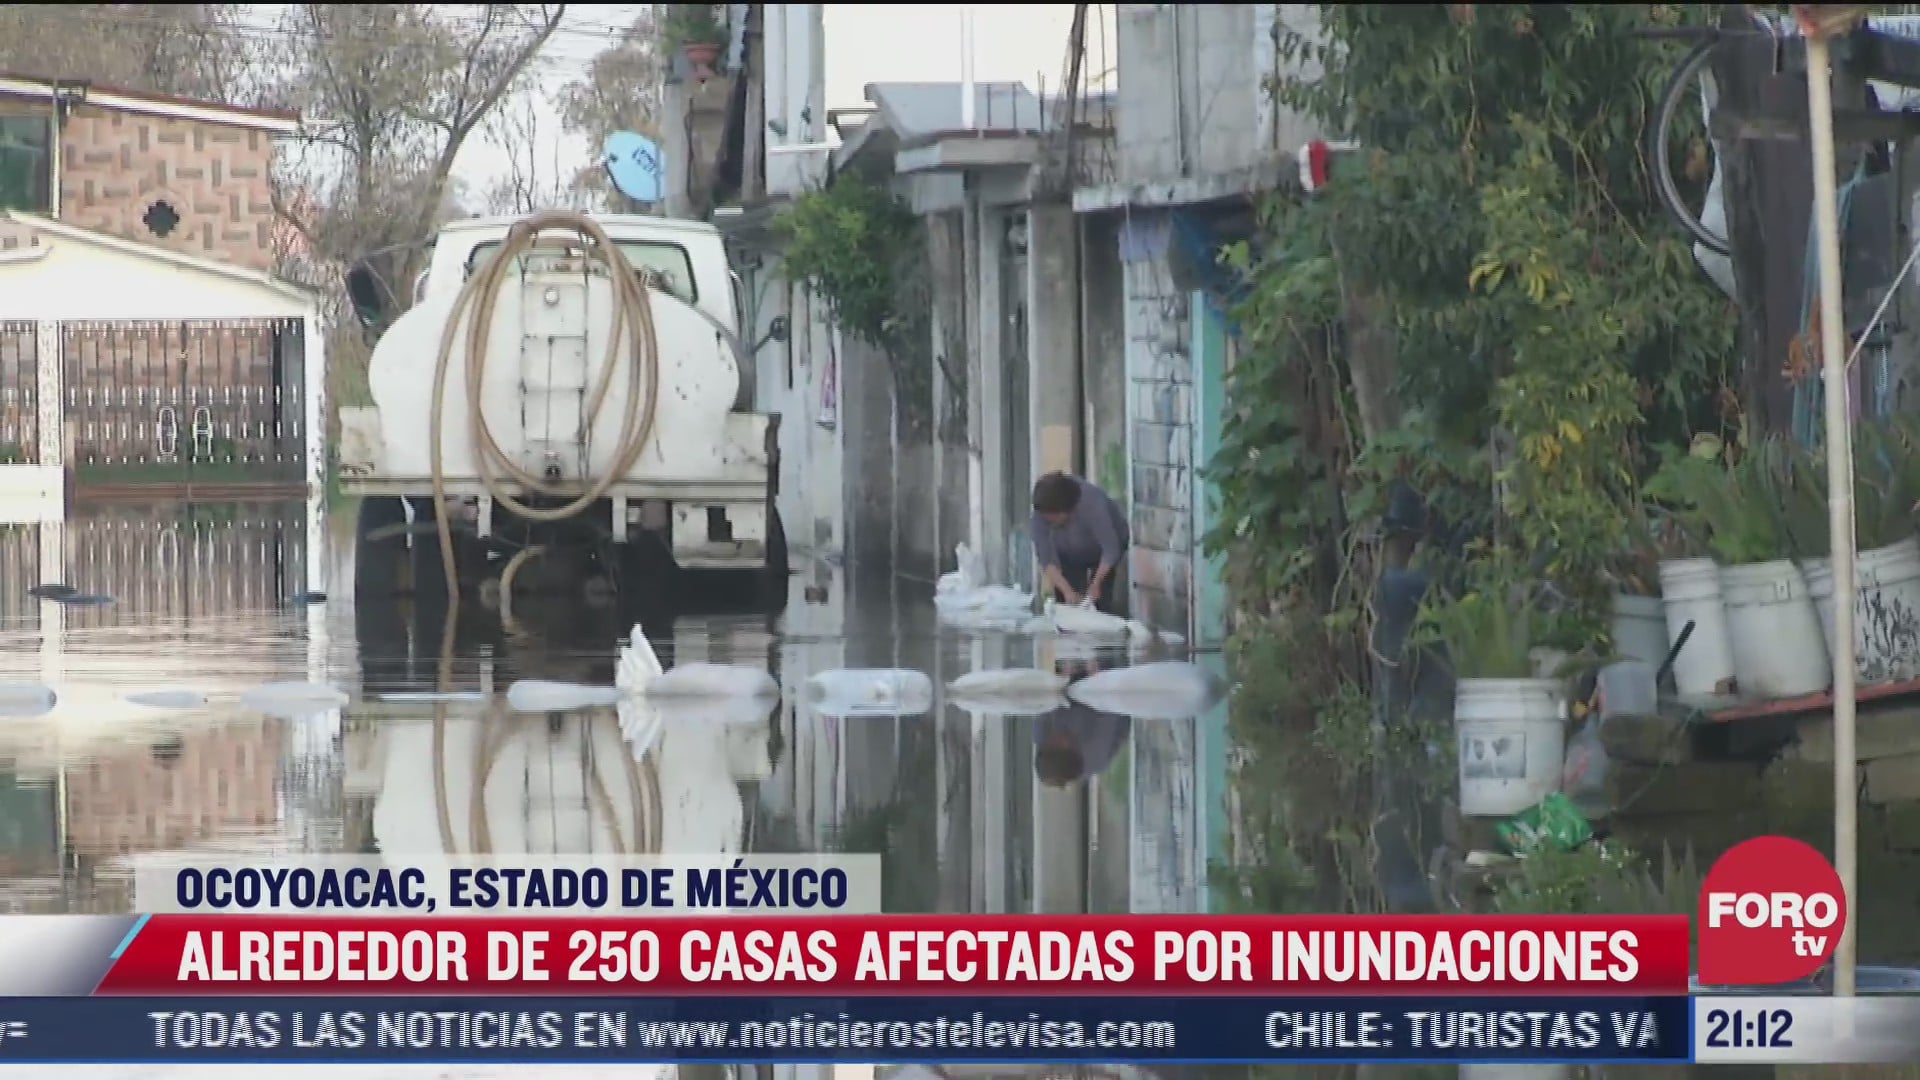 alrededor de 250 casas afectadas por inundaciones en ocoyoacac estado de mexico